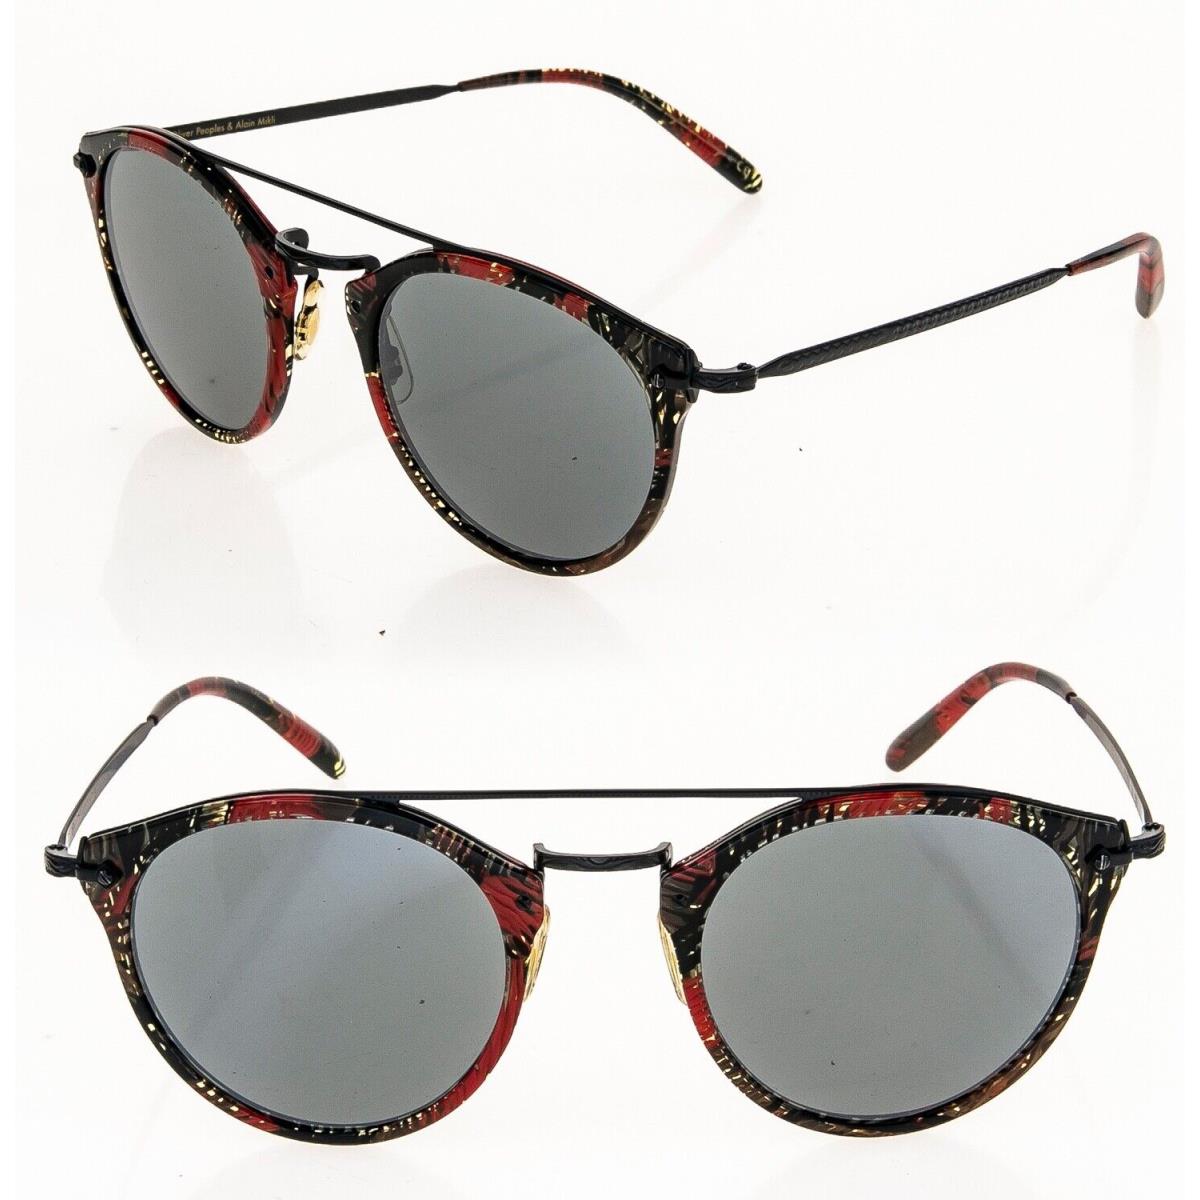 Oliver Peoples Alain Mikli Remick Sunglasses OV5349S Black Palmier Red 5349 - 1624/6G, Frame: Black, Lens: Black